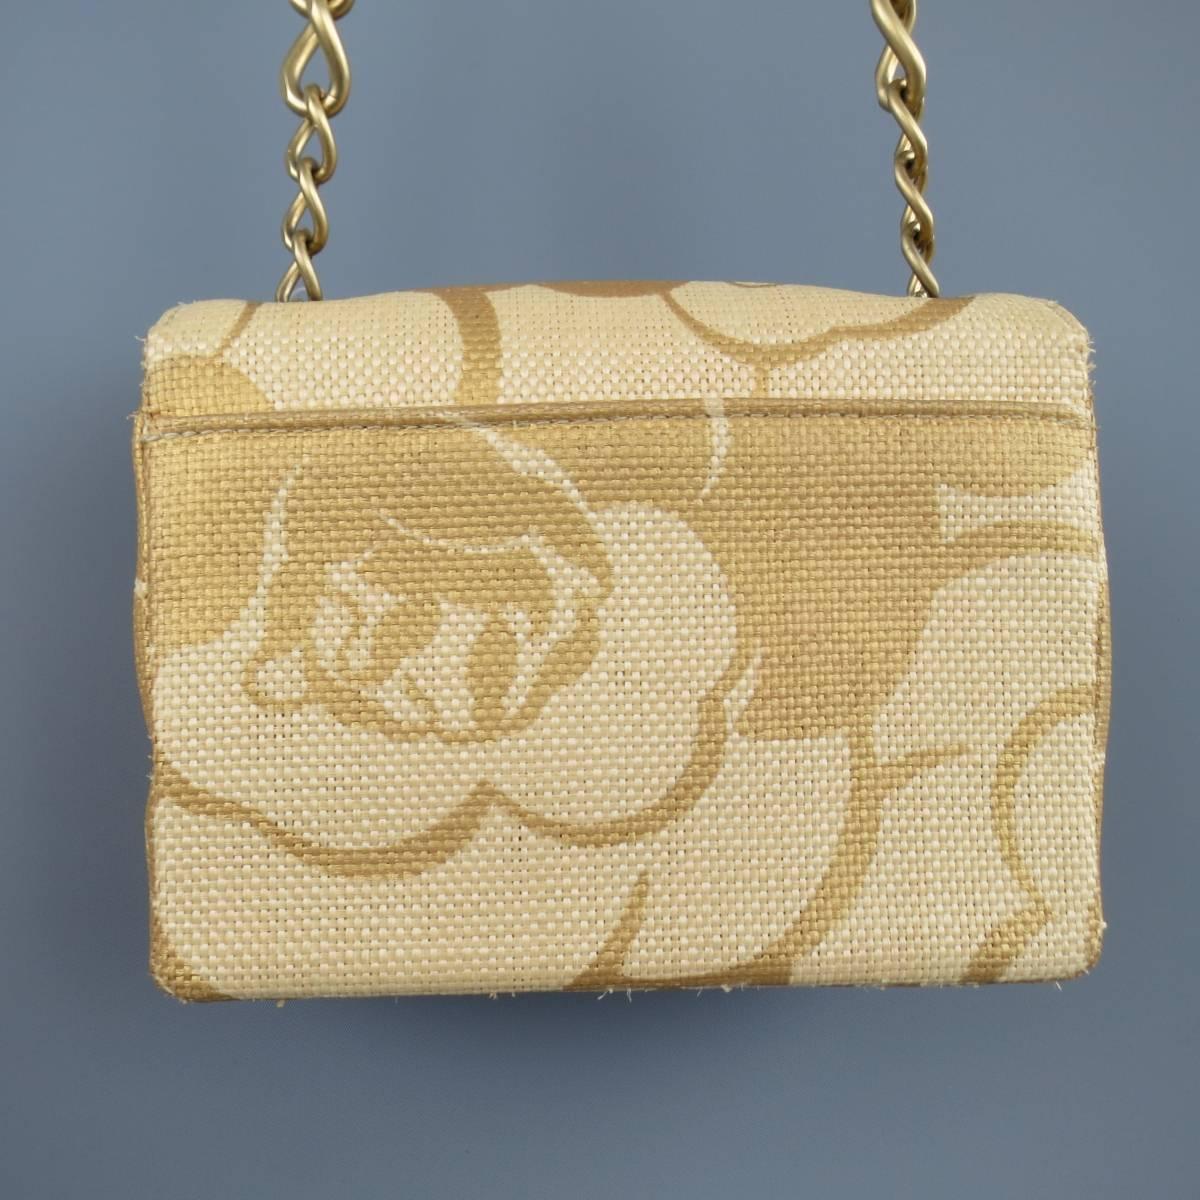 CHANEL Metallic Gold & Beige Floral Straw Chain Strap Handbag 1